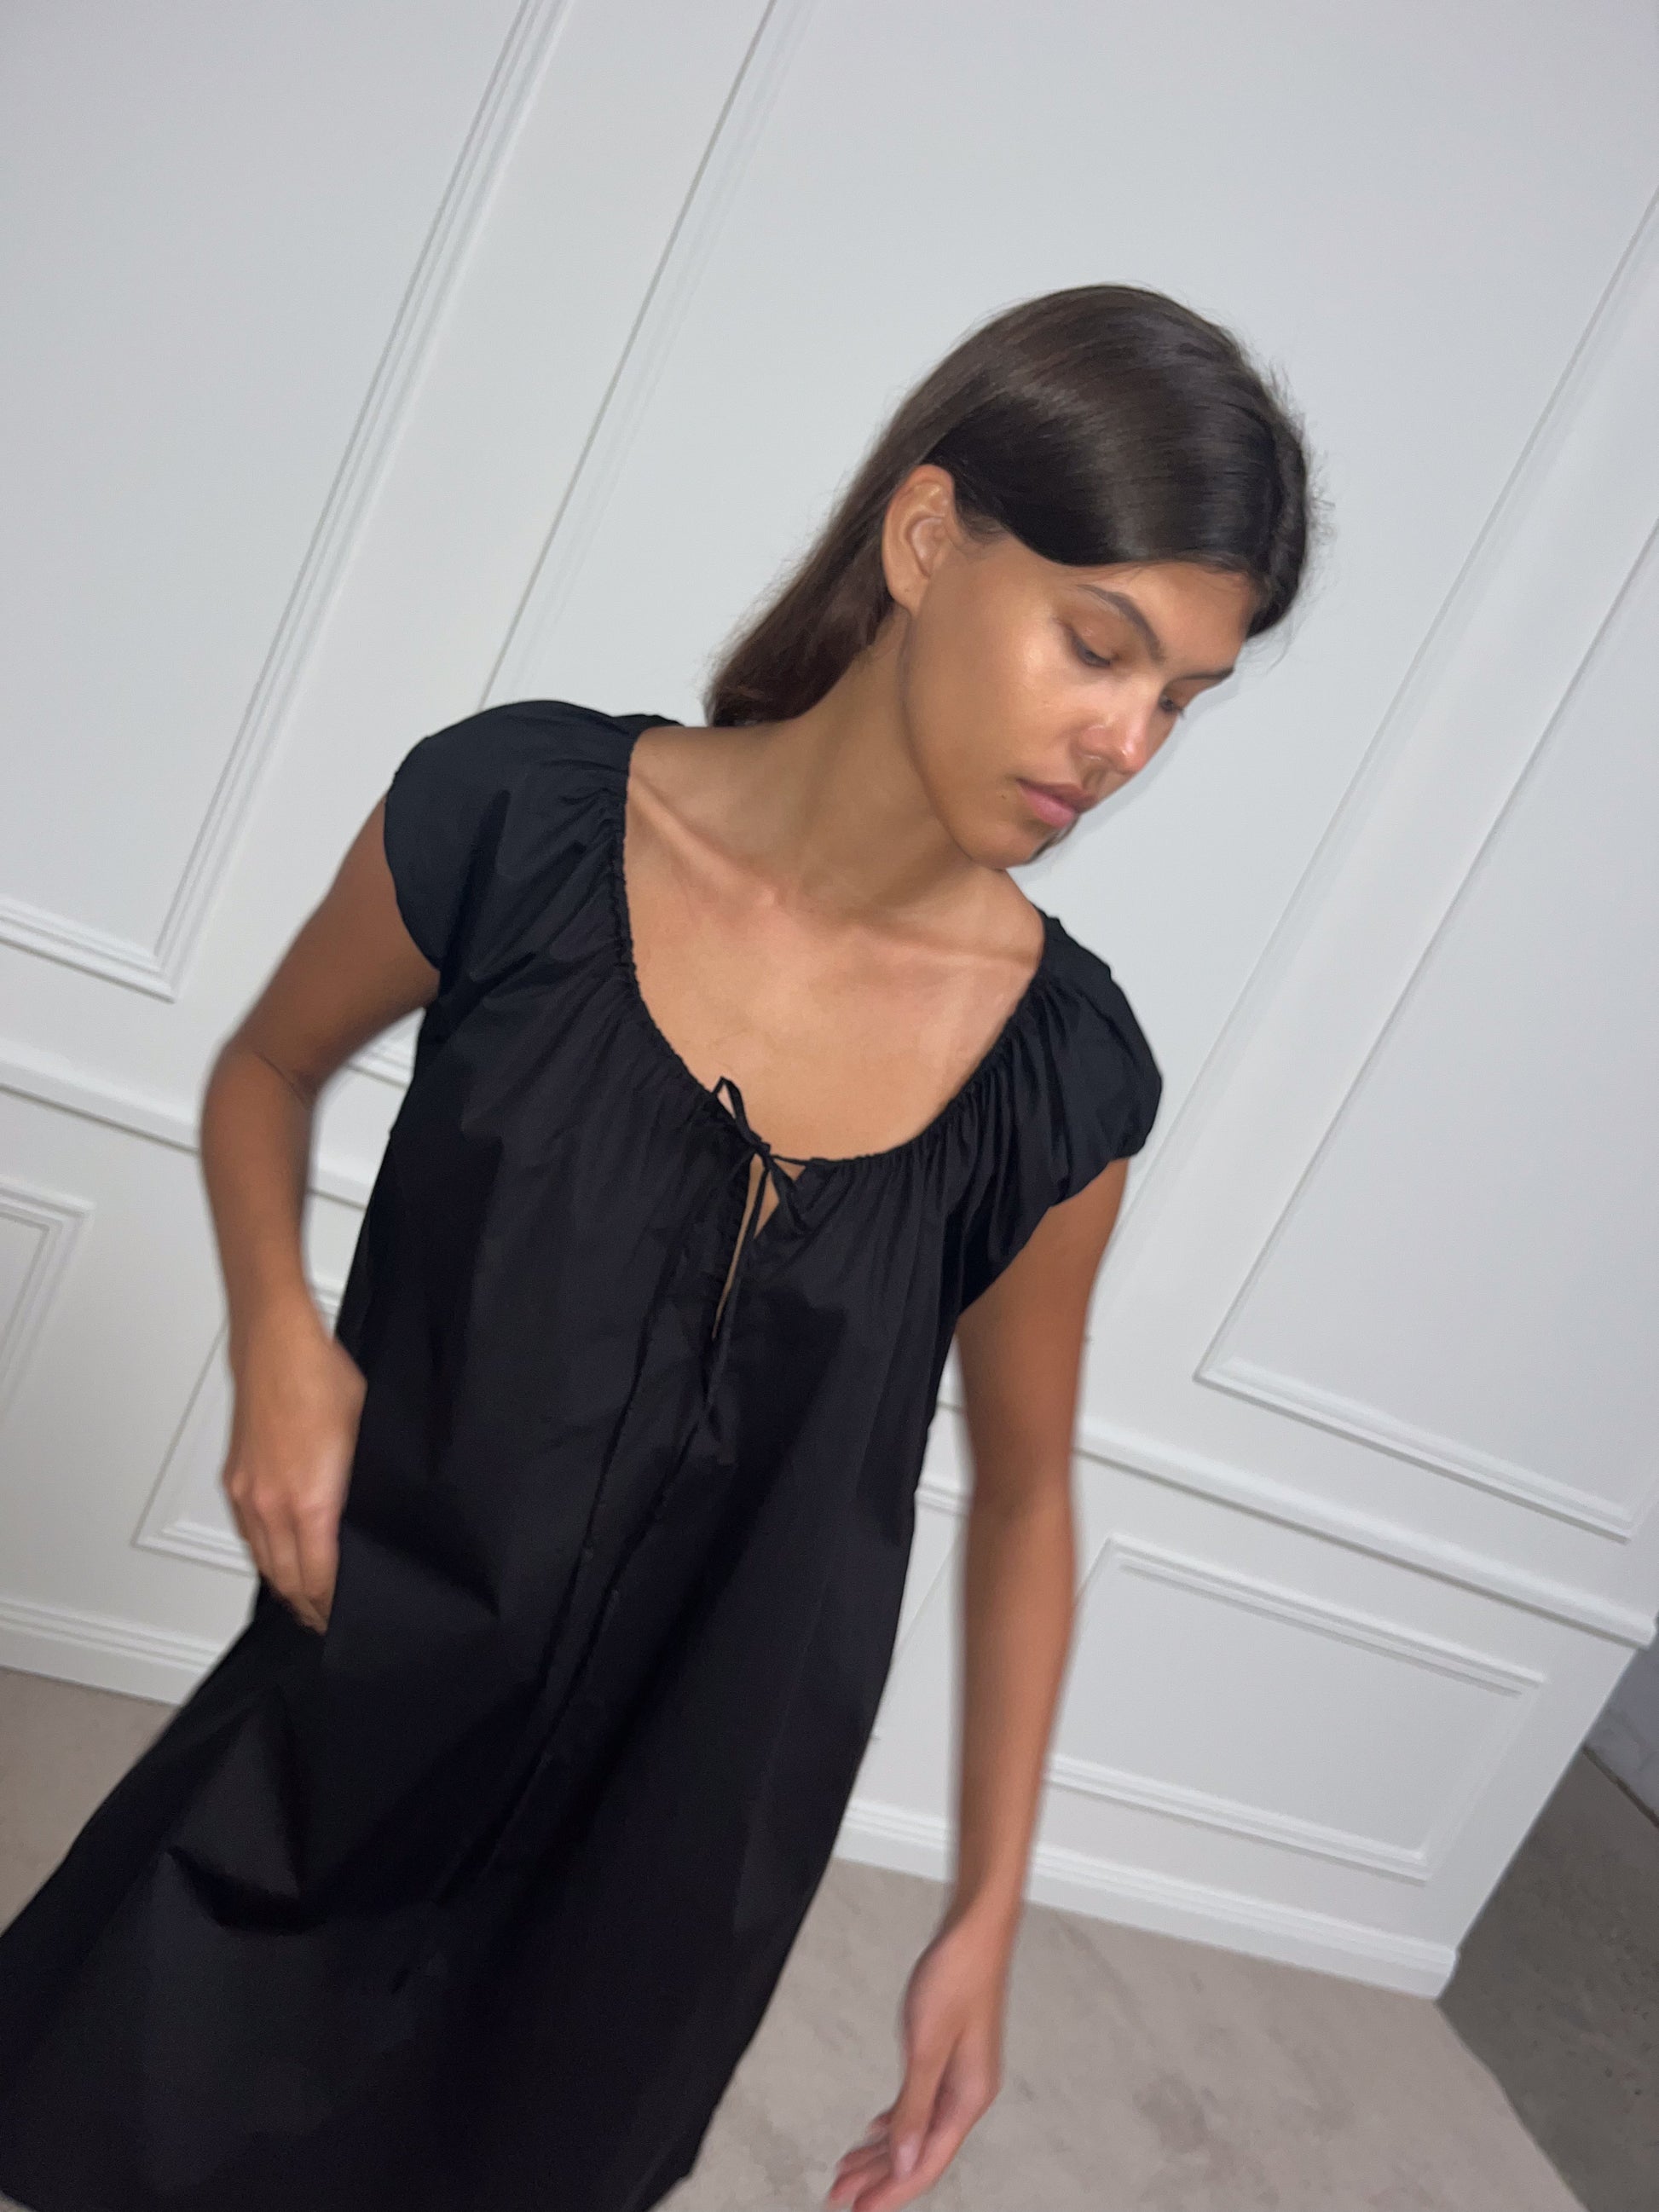 Female model wearing Capped Sleeve Dress - Black by Deiji Studios against plain background